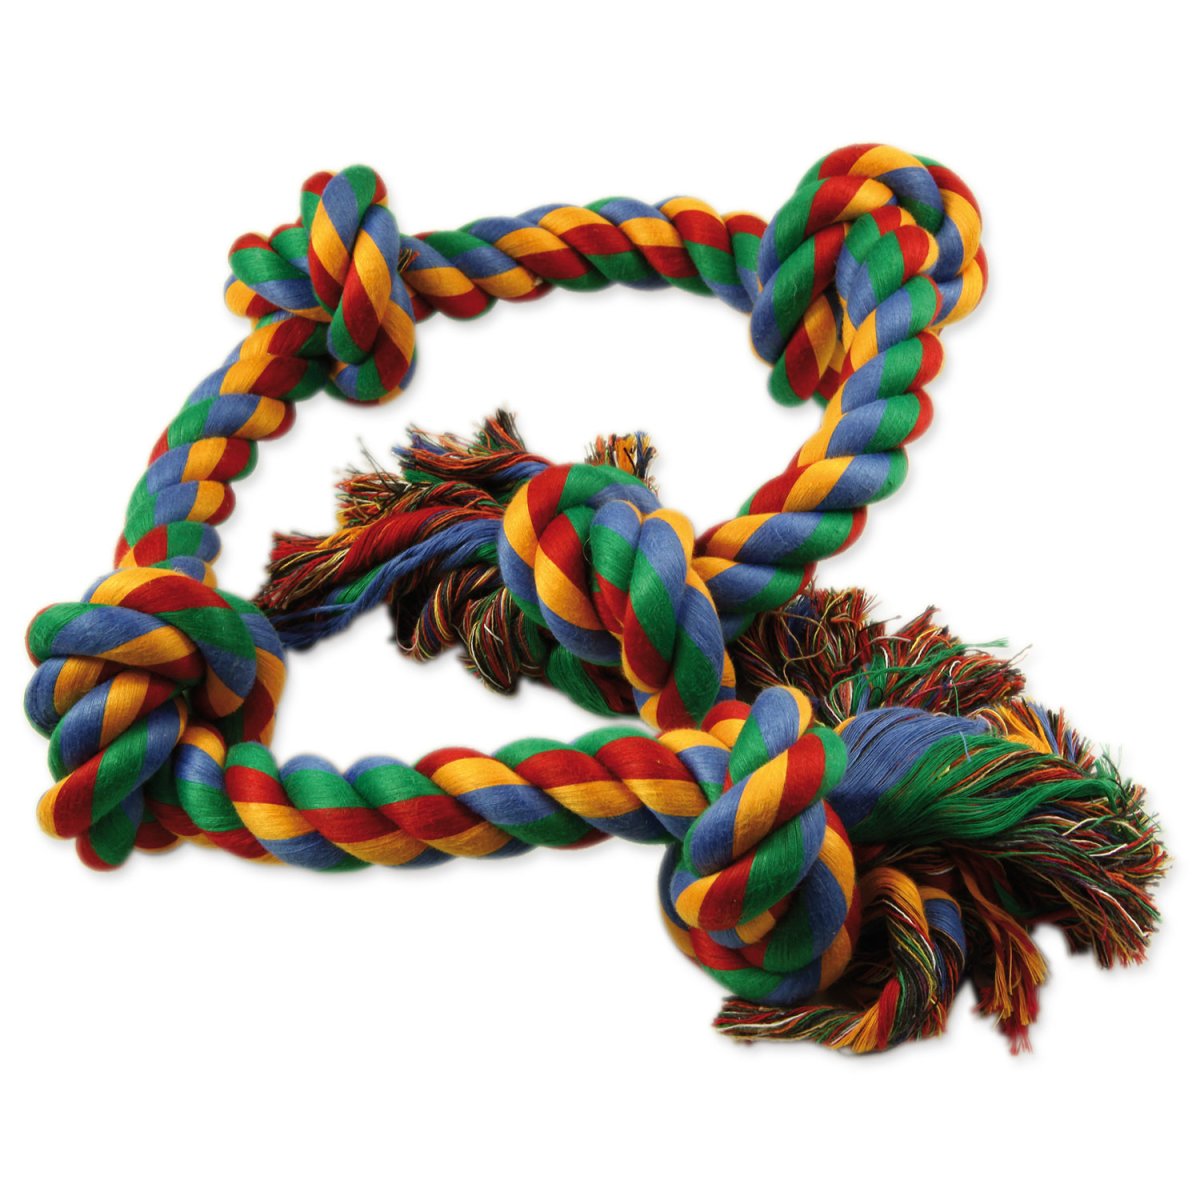 Uzel DOG FANTASY bavlněný barevný 5 knotů 95 cm